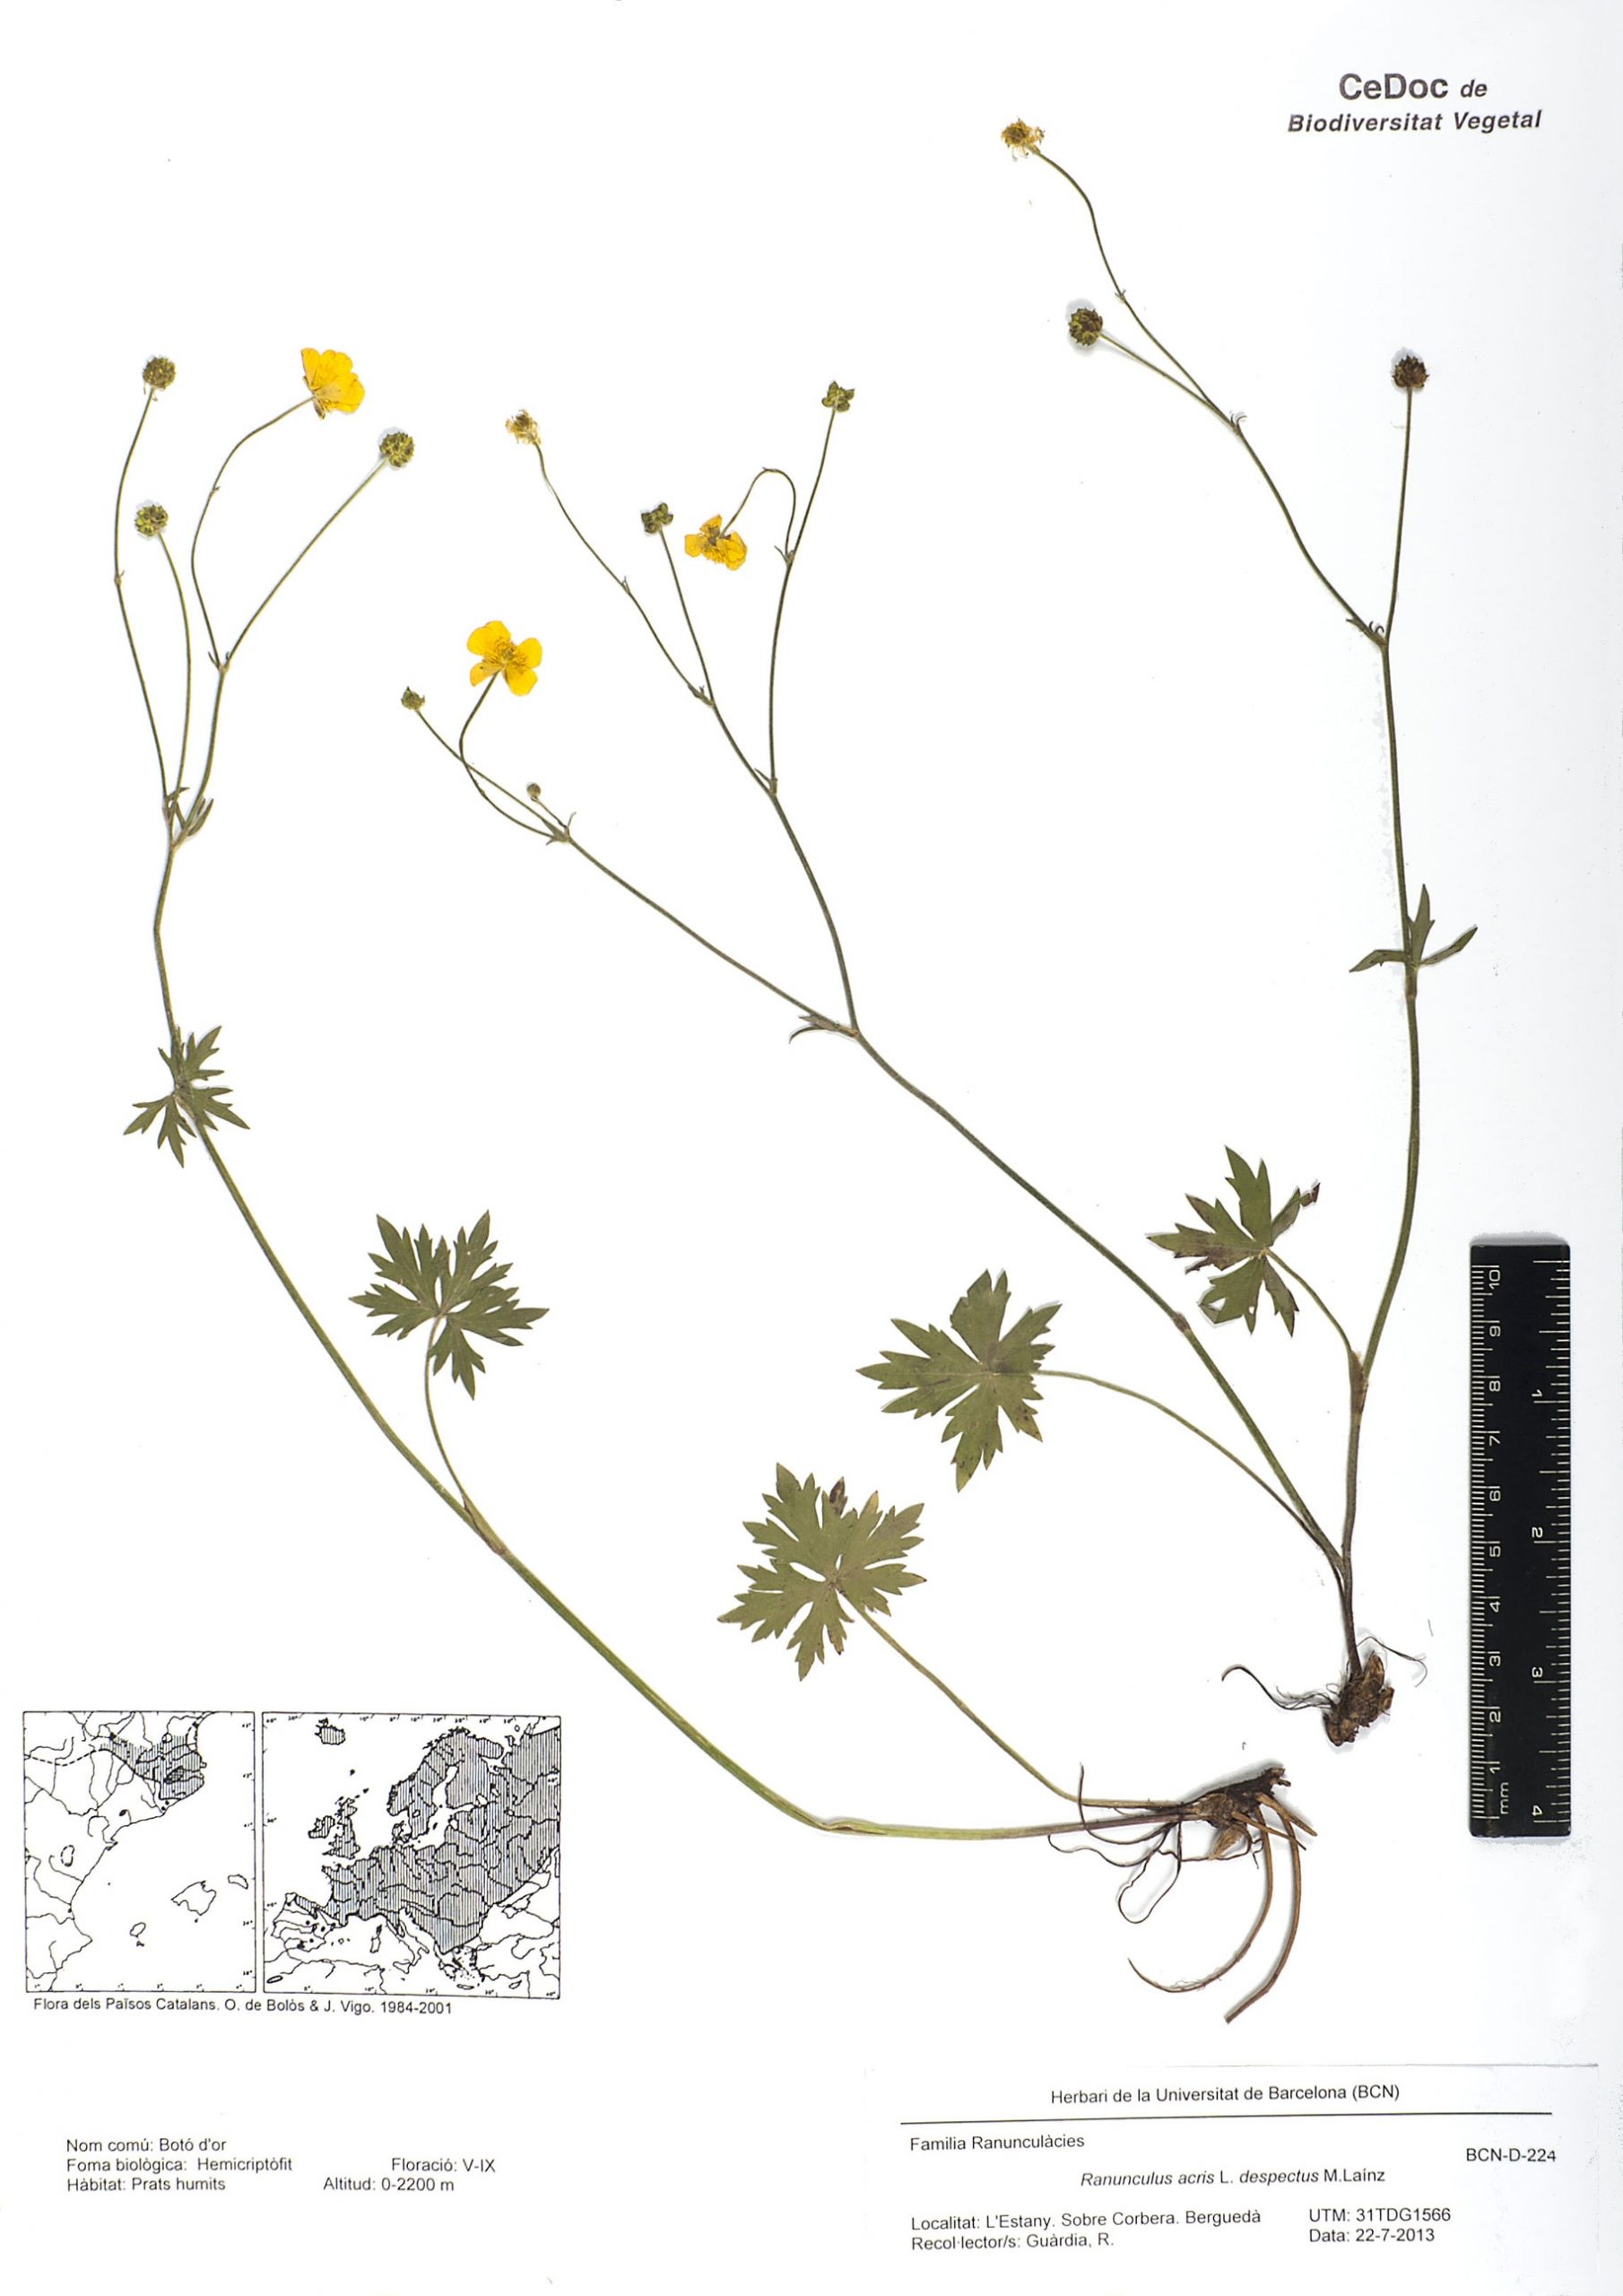 Ranunculus acris L. subsp. despectus M.Laínz (Botó d’or)